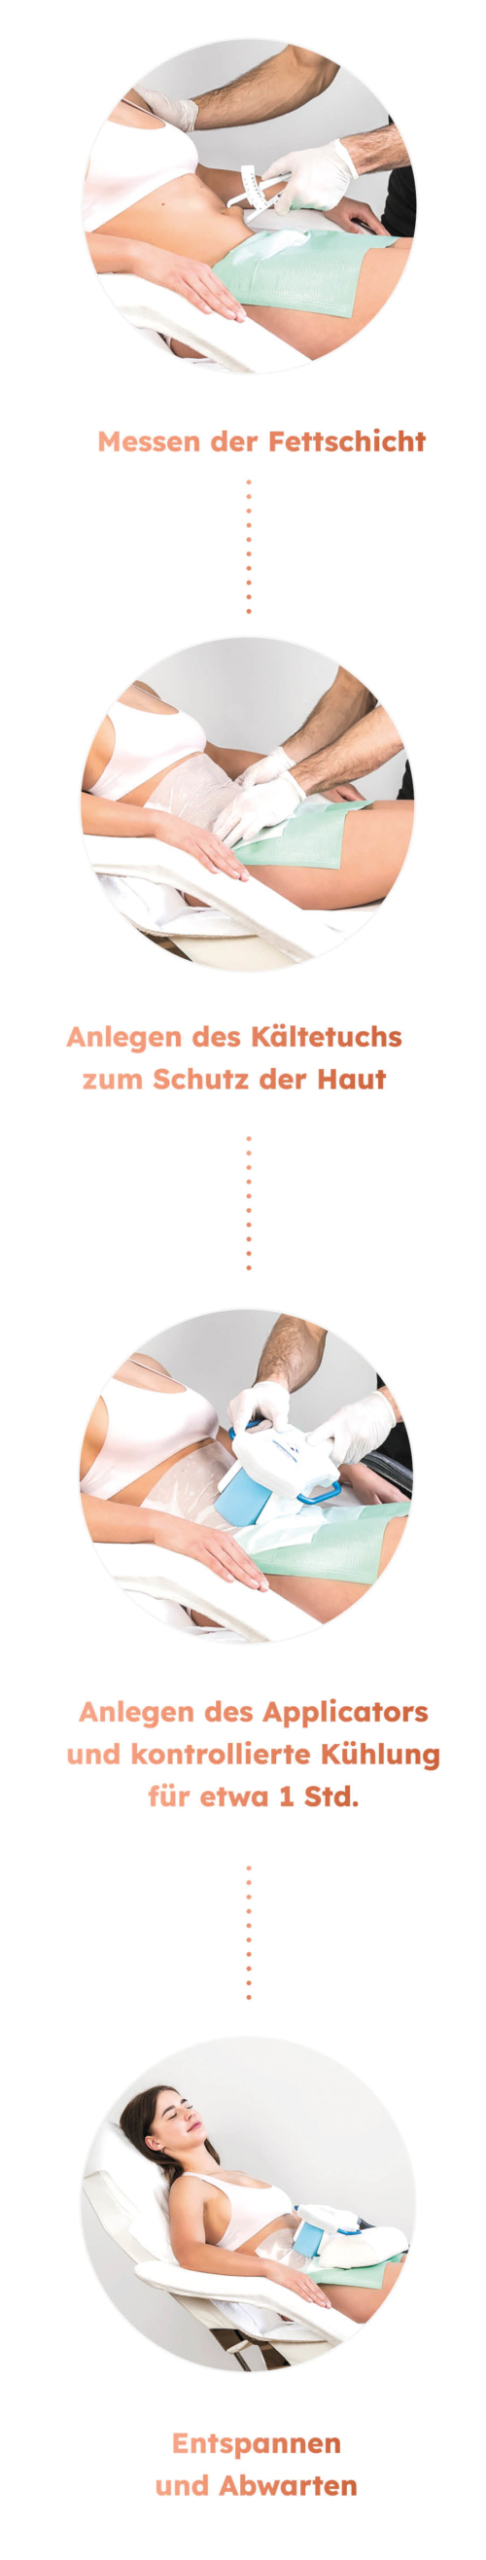 Frauenschönheit - Ablauf der Behandlung - Frauenarzt | Gynäkologikum 24 - Praxis für Gynäkologie München | Zentrum